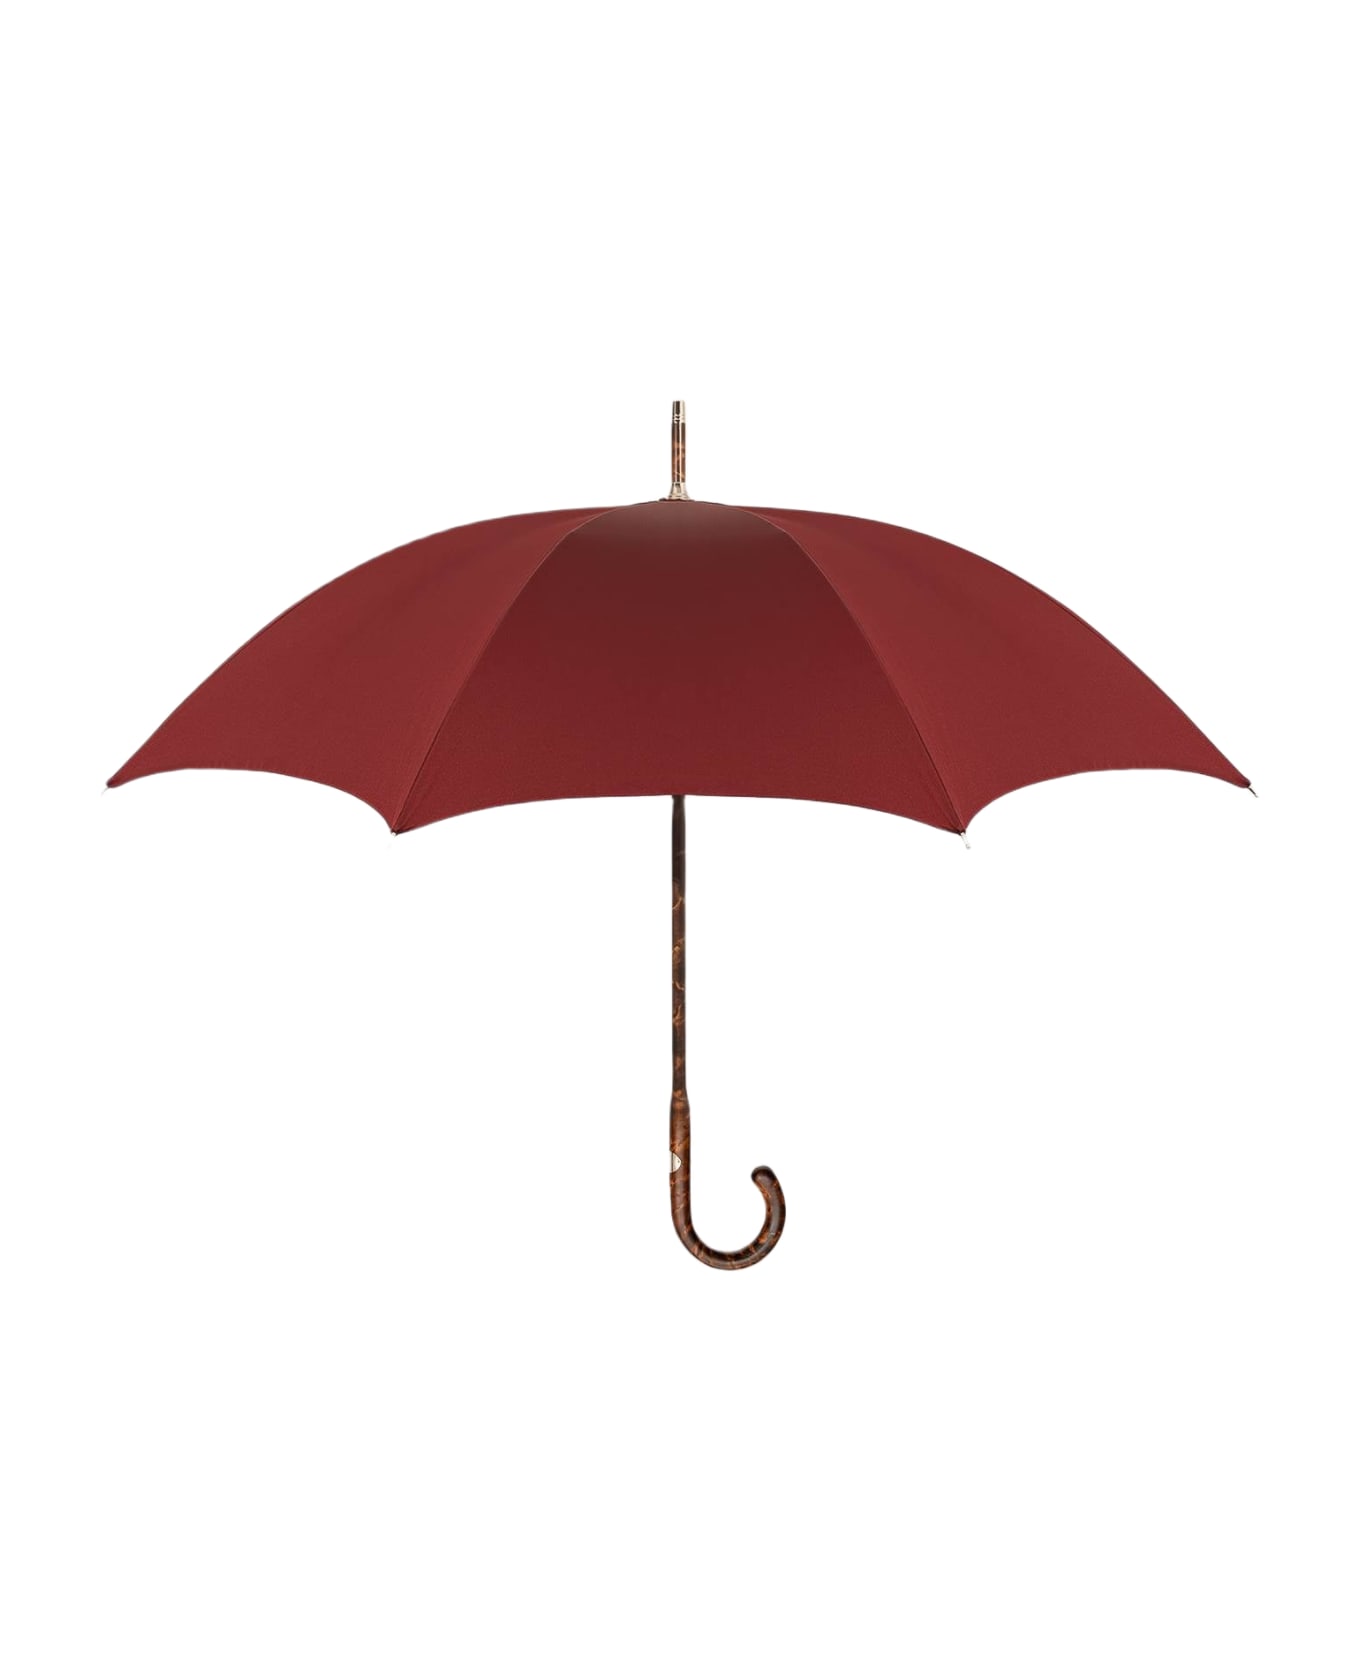 Larusmiani Umbrella Travel Umbrella - DarkRed